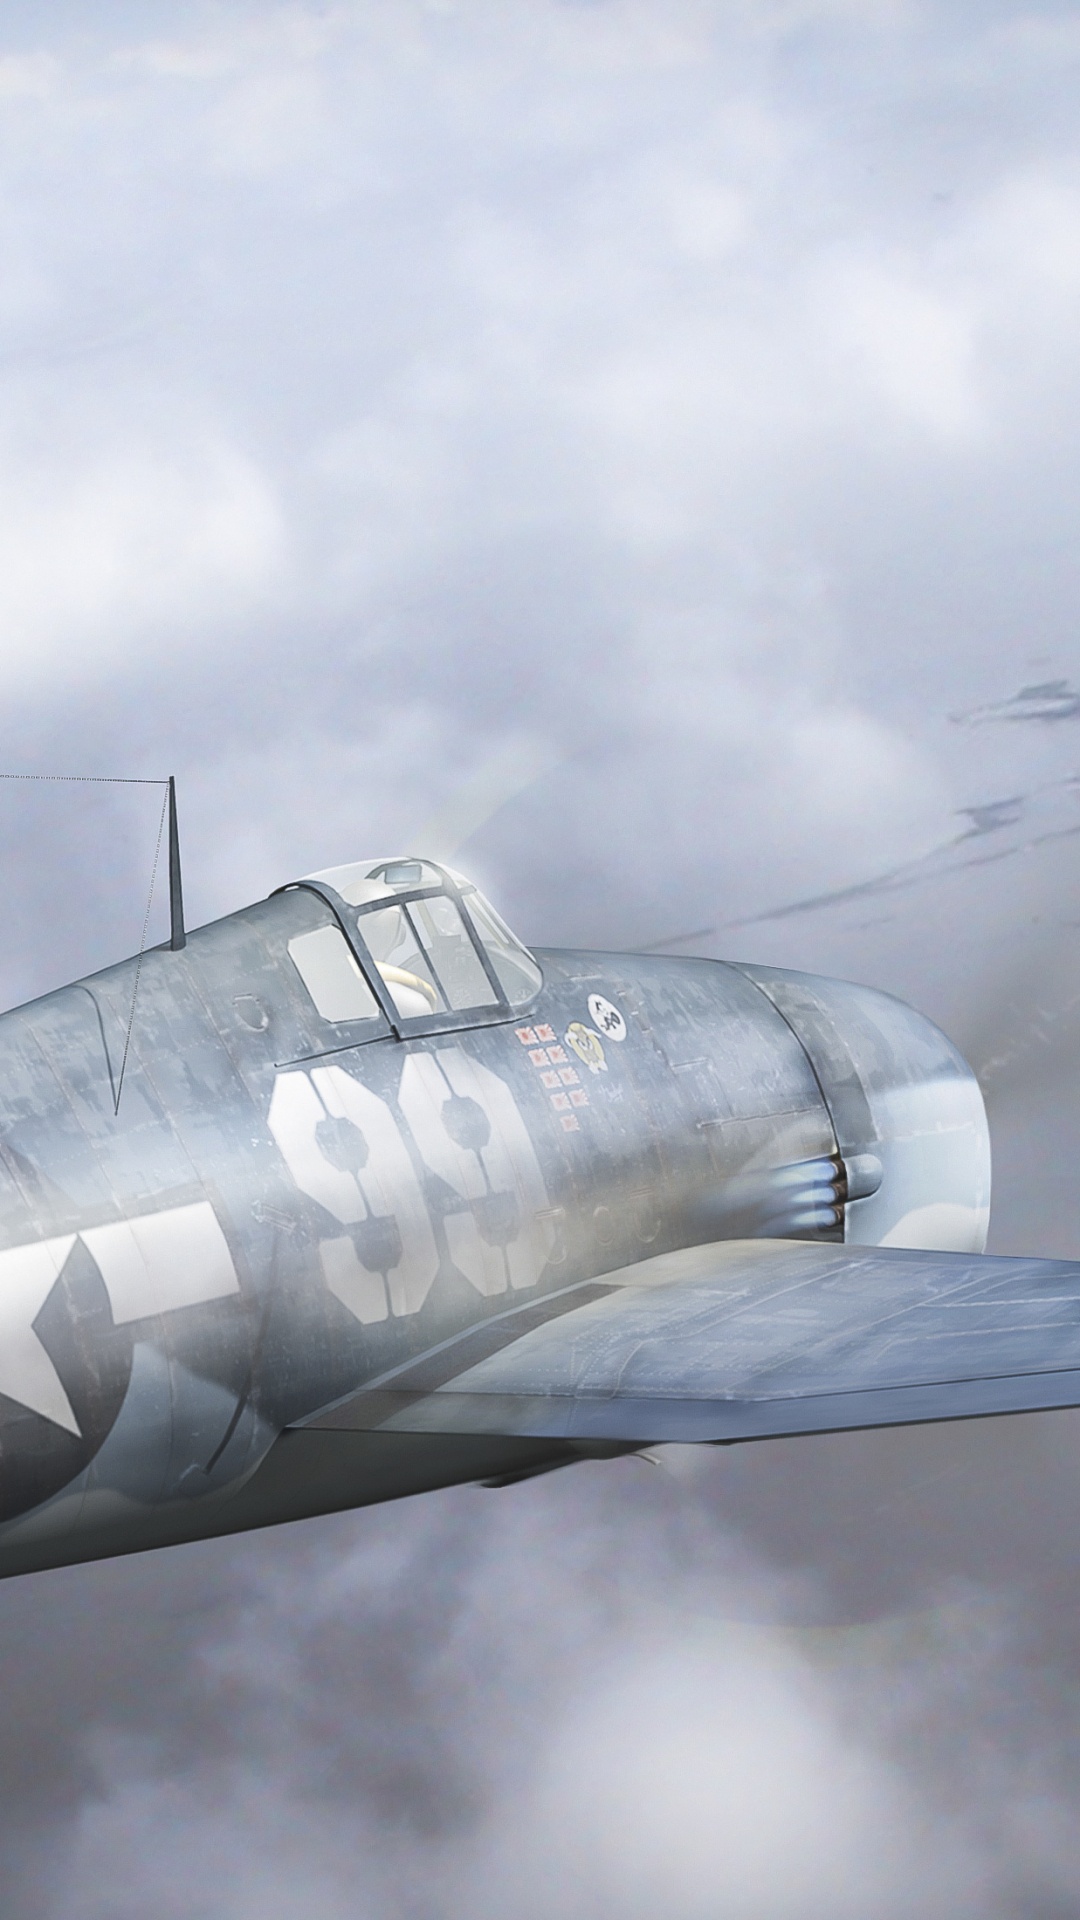 第二次世界大战, 航空, 航班, 军用飞机, 空军 壁纸 1080x1920 允许